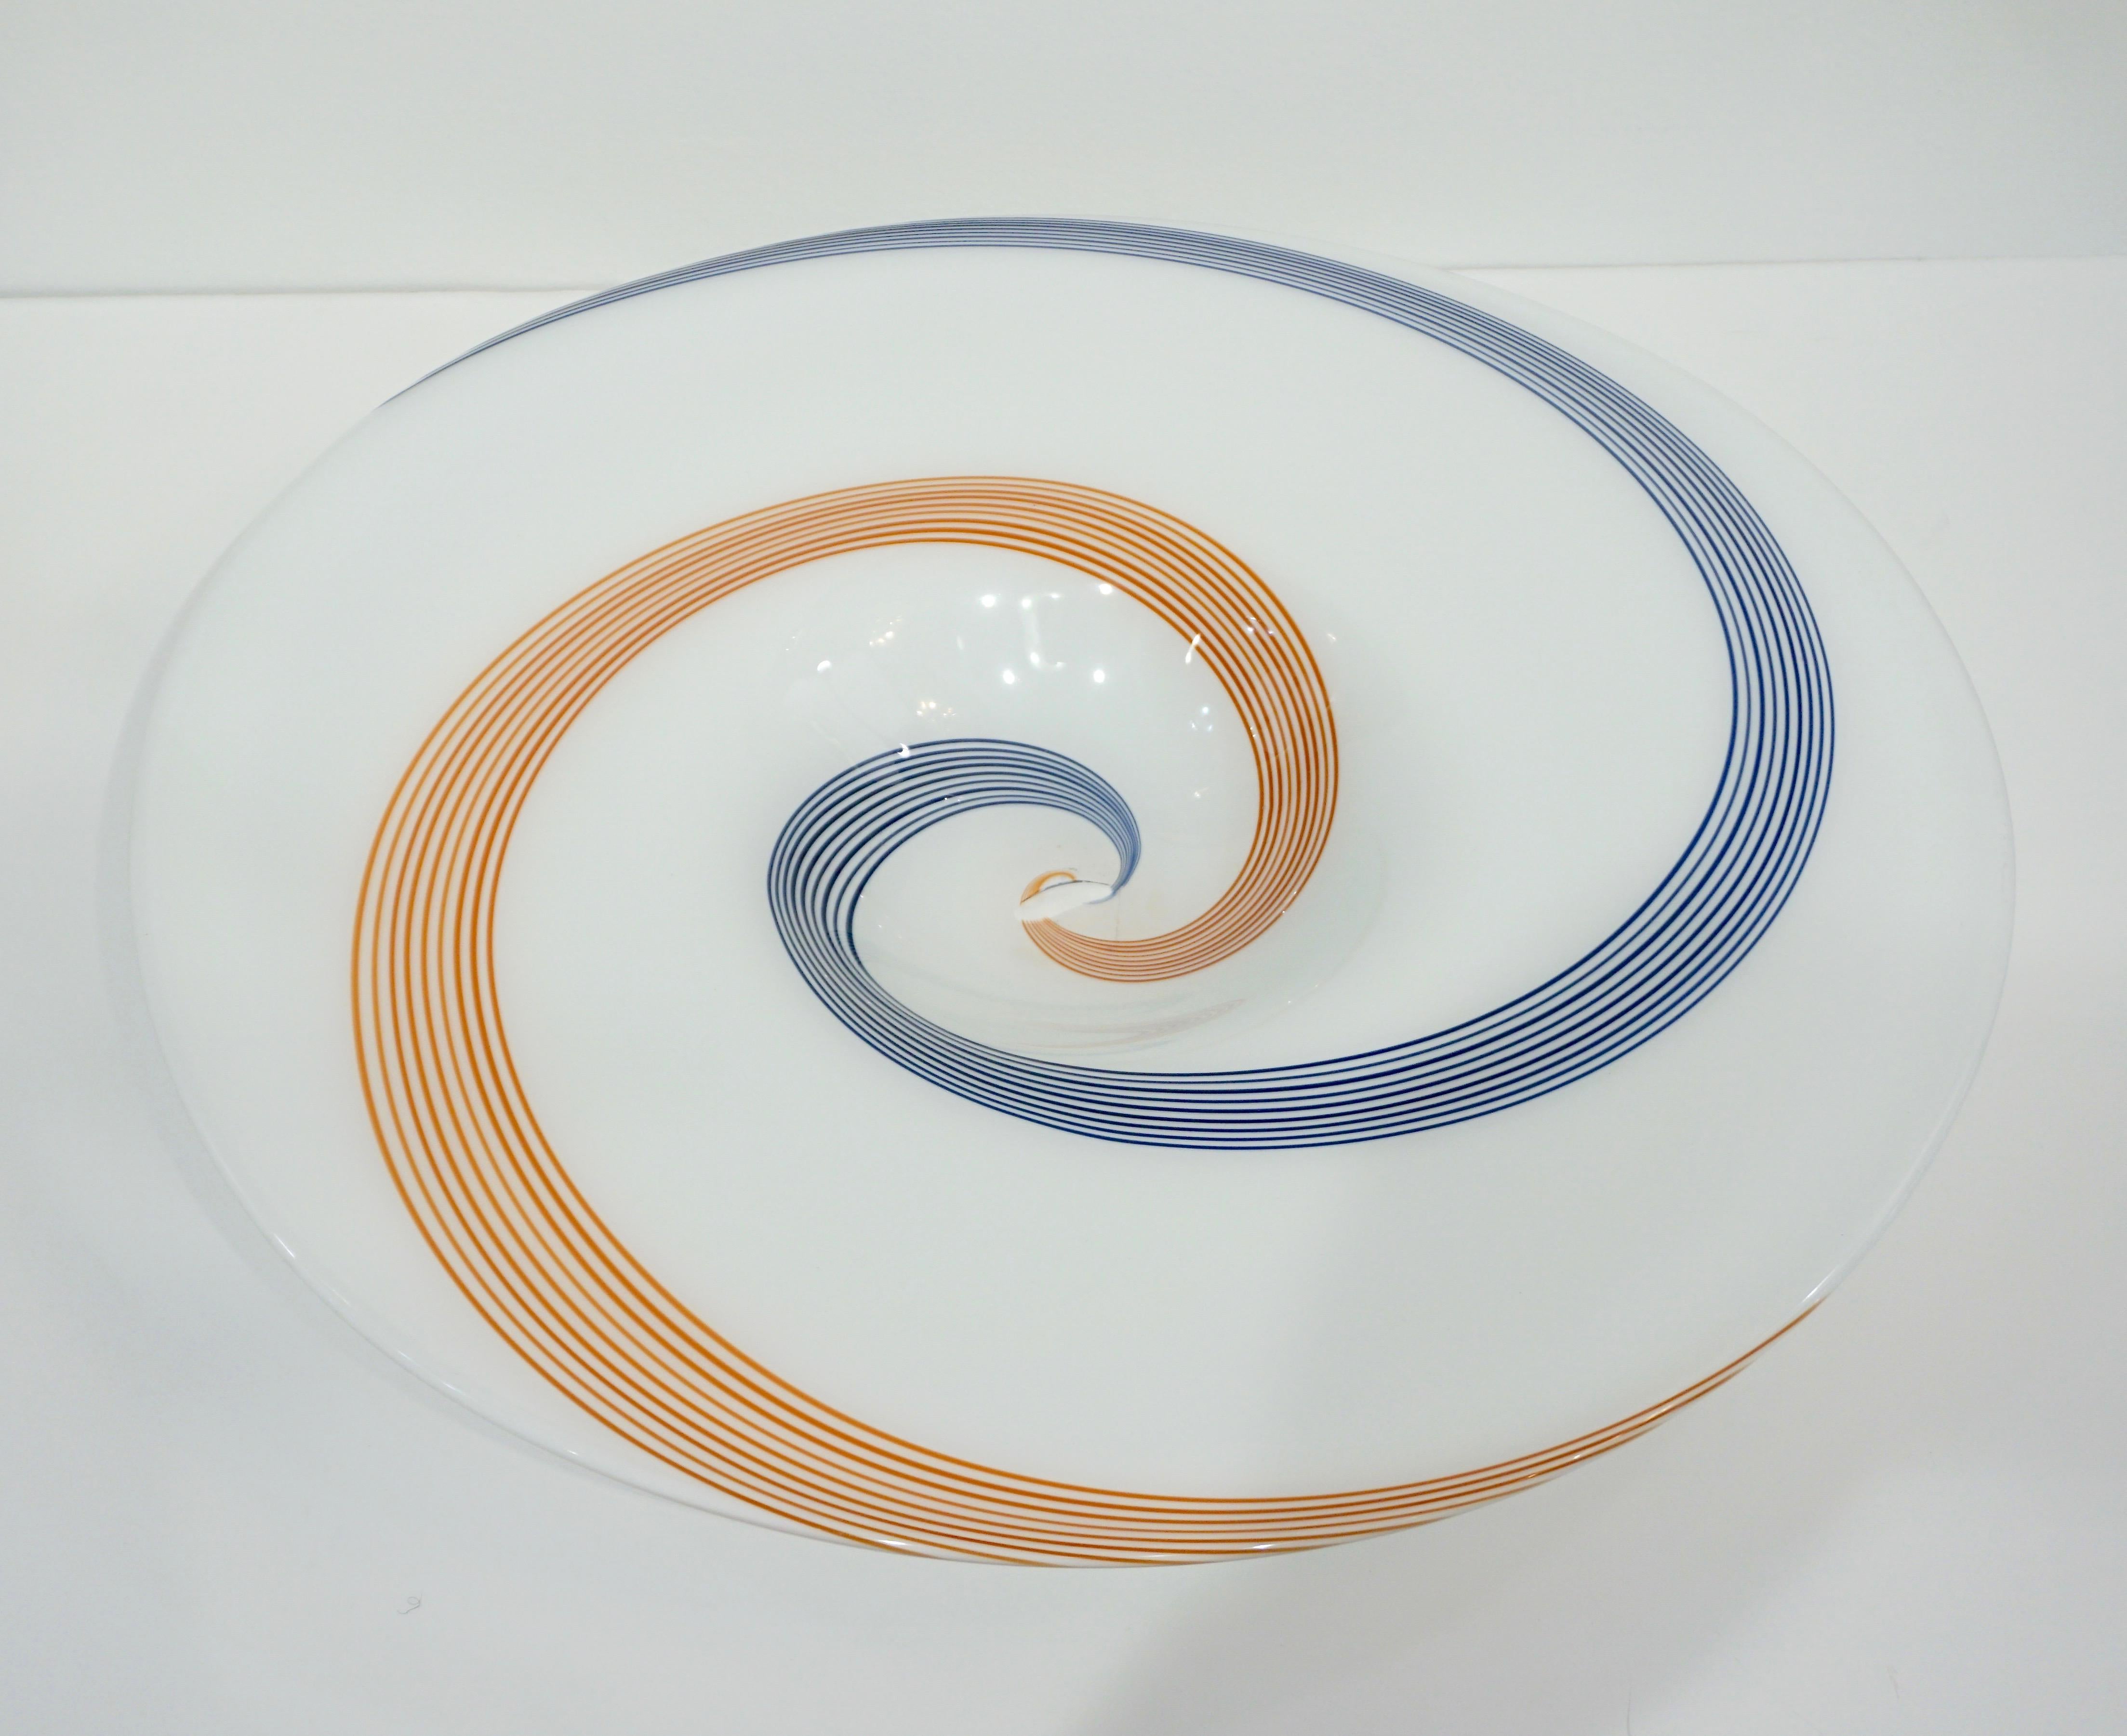 Mid-20th Century 1960s Italian White Murano Glass Extra Large Platter with Orange & Blue Murrine